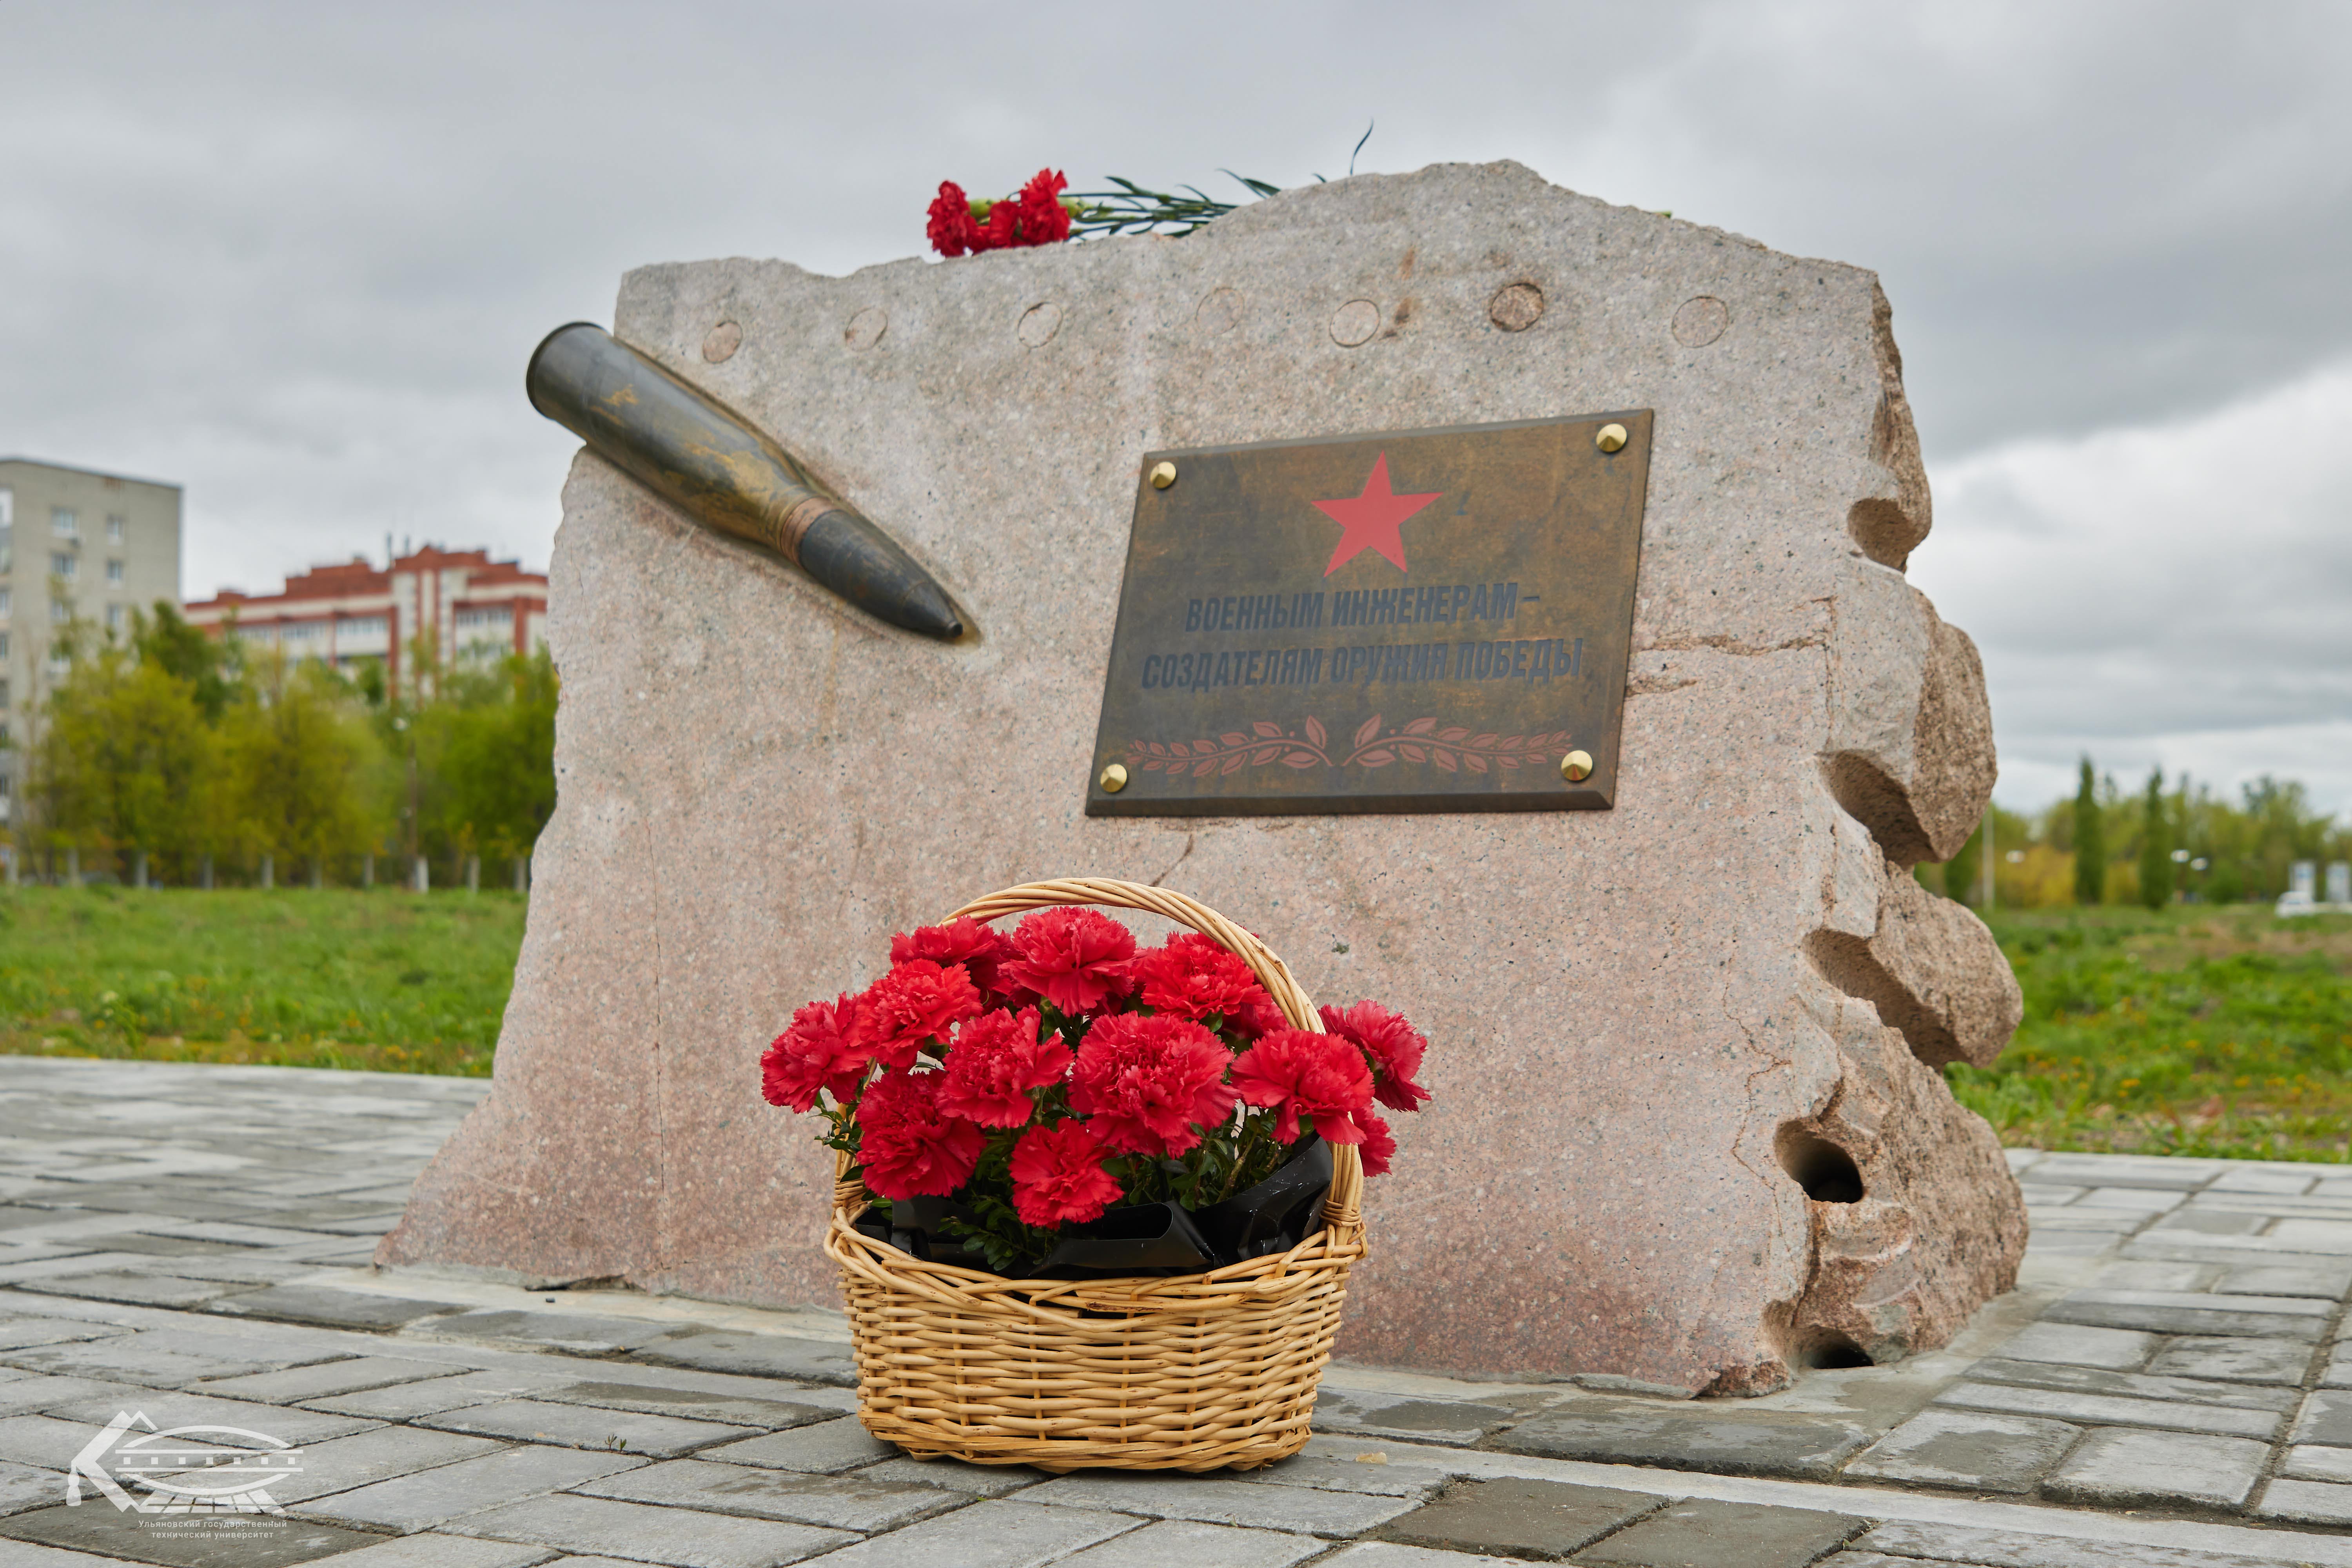 Преподаватели и студенты Политеха возложили цветы к мемориальному знаку «Военным инженерам – создателям оружия Победы»